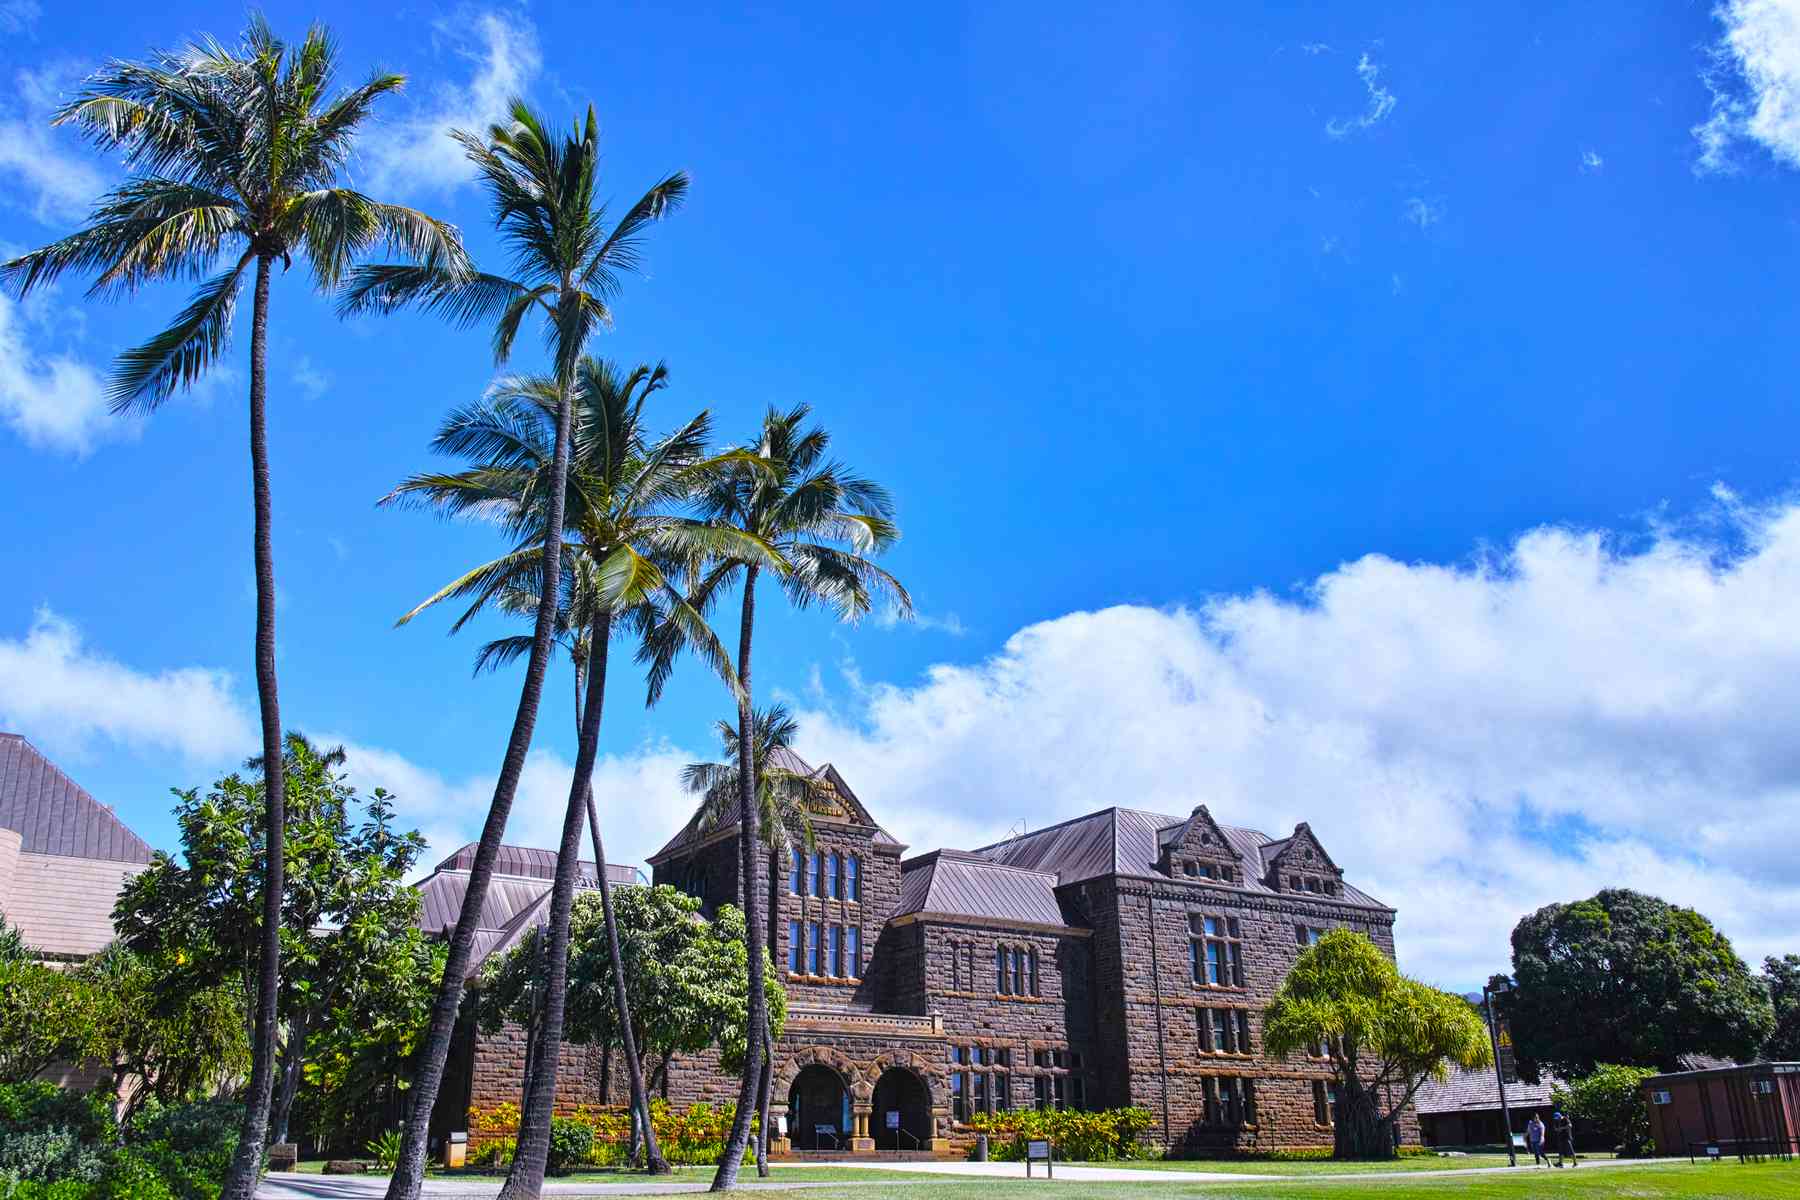 Bishop Museum à Honolulu.  Fondé en 1889, ce musée présente des expositions sur les cultures de la région pacifique d'Hawaï et de la Polynésie.